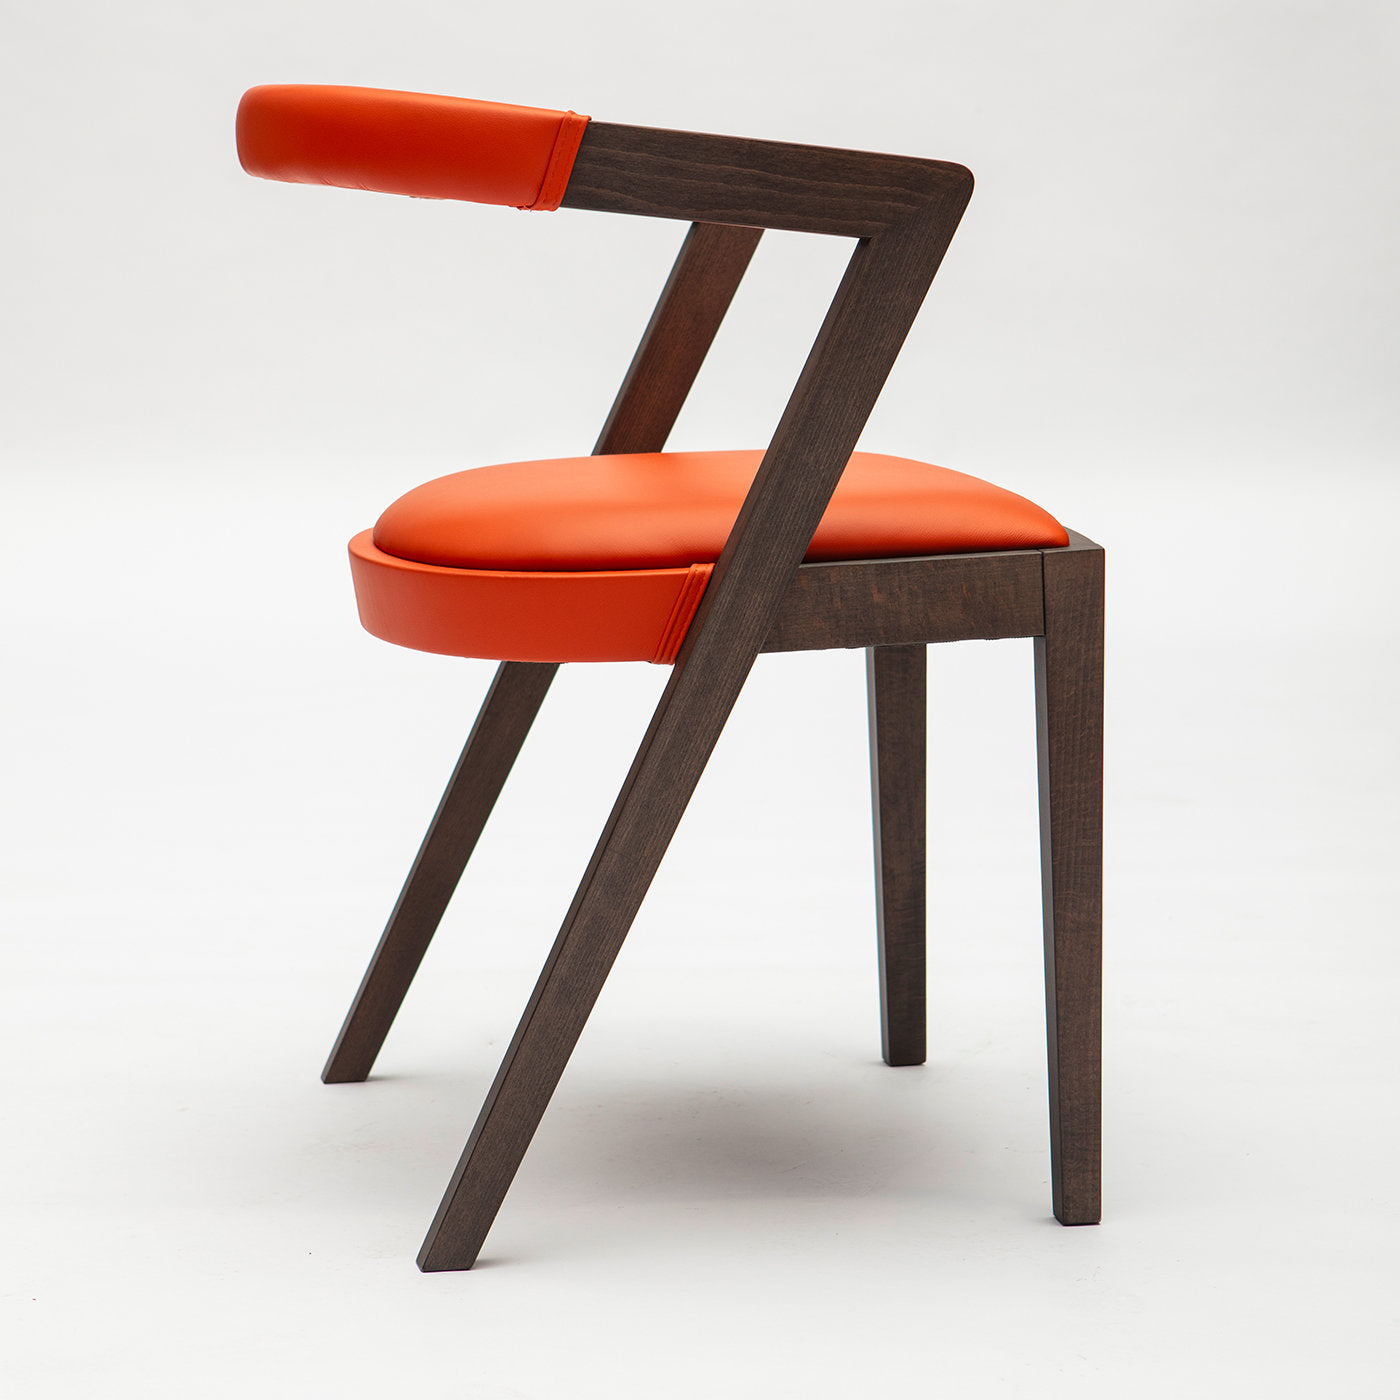 String orange chair - Alternative view 1